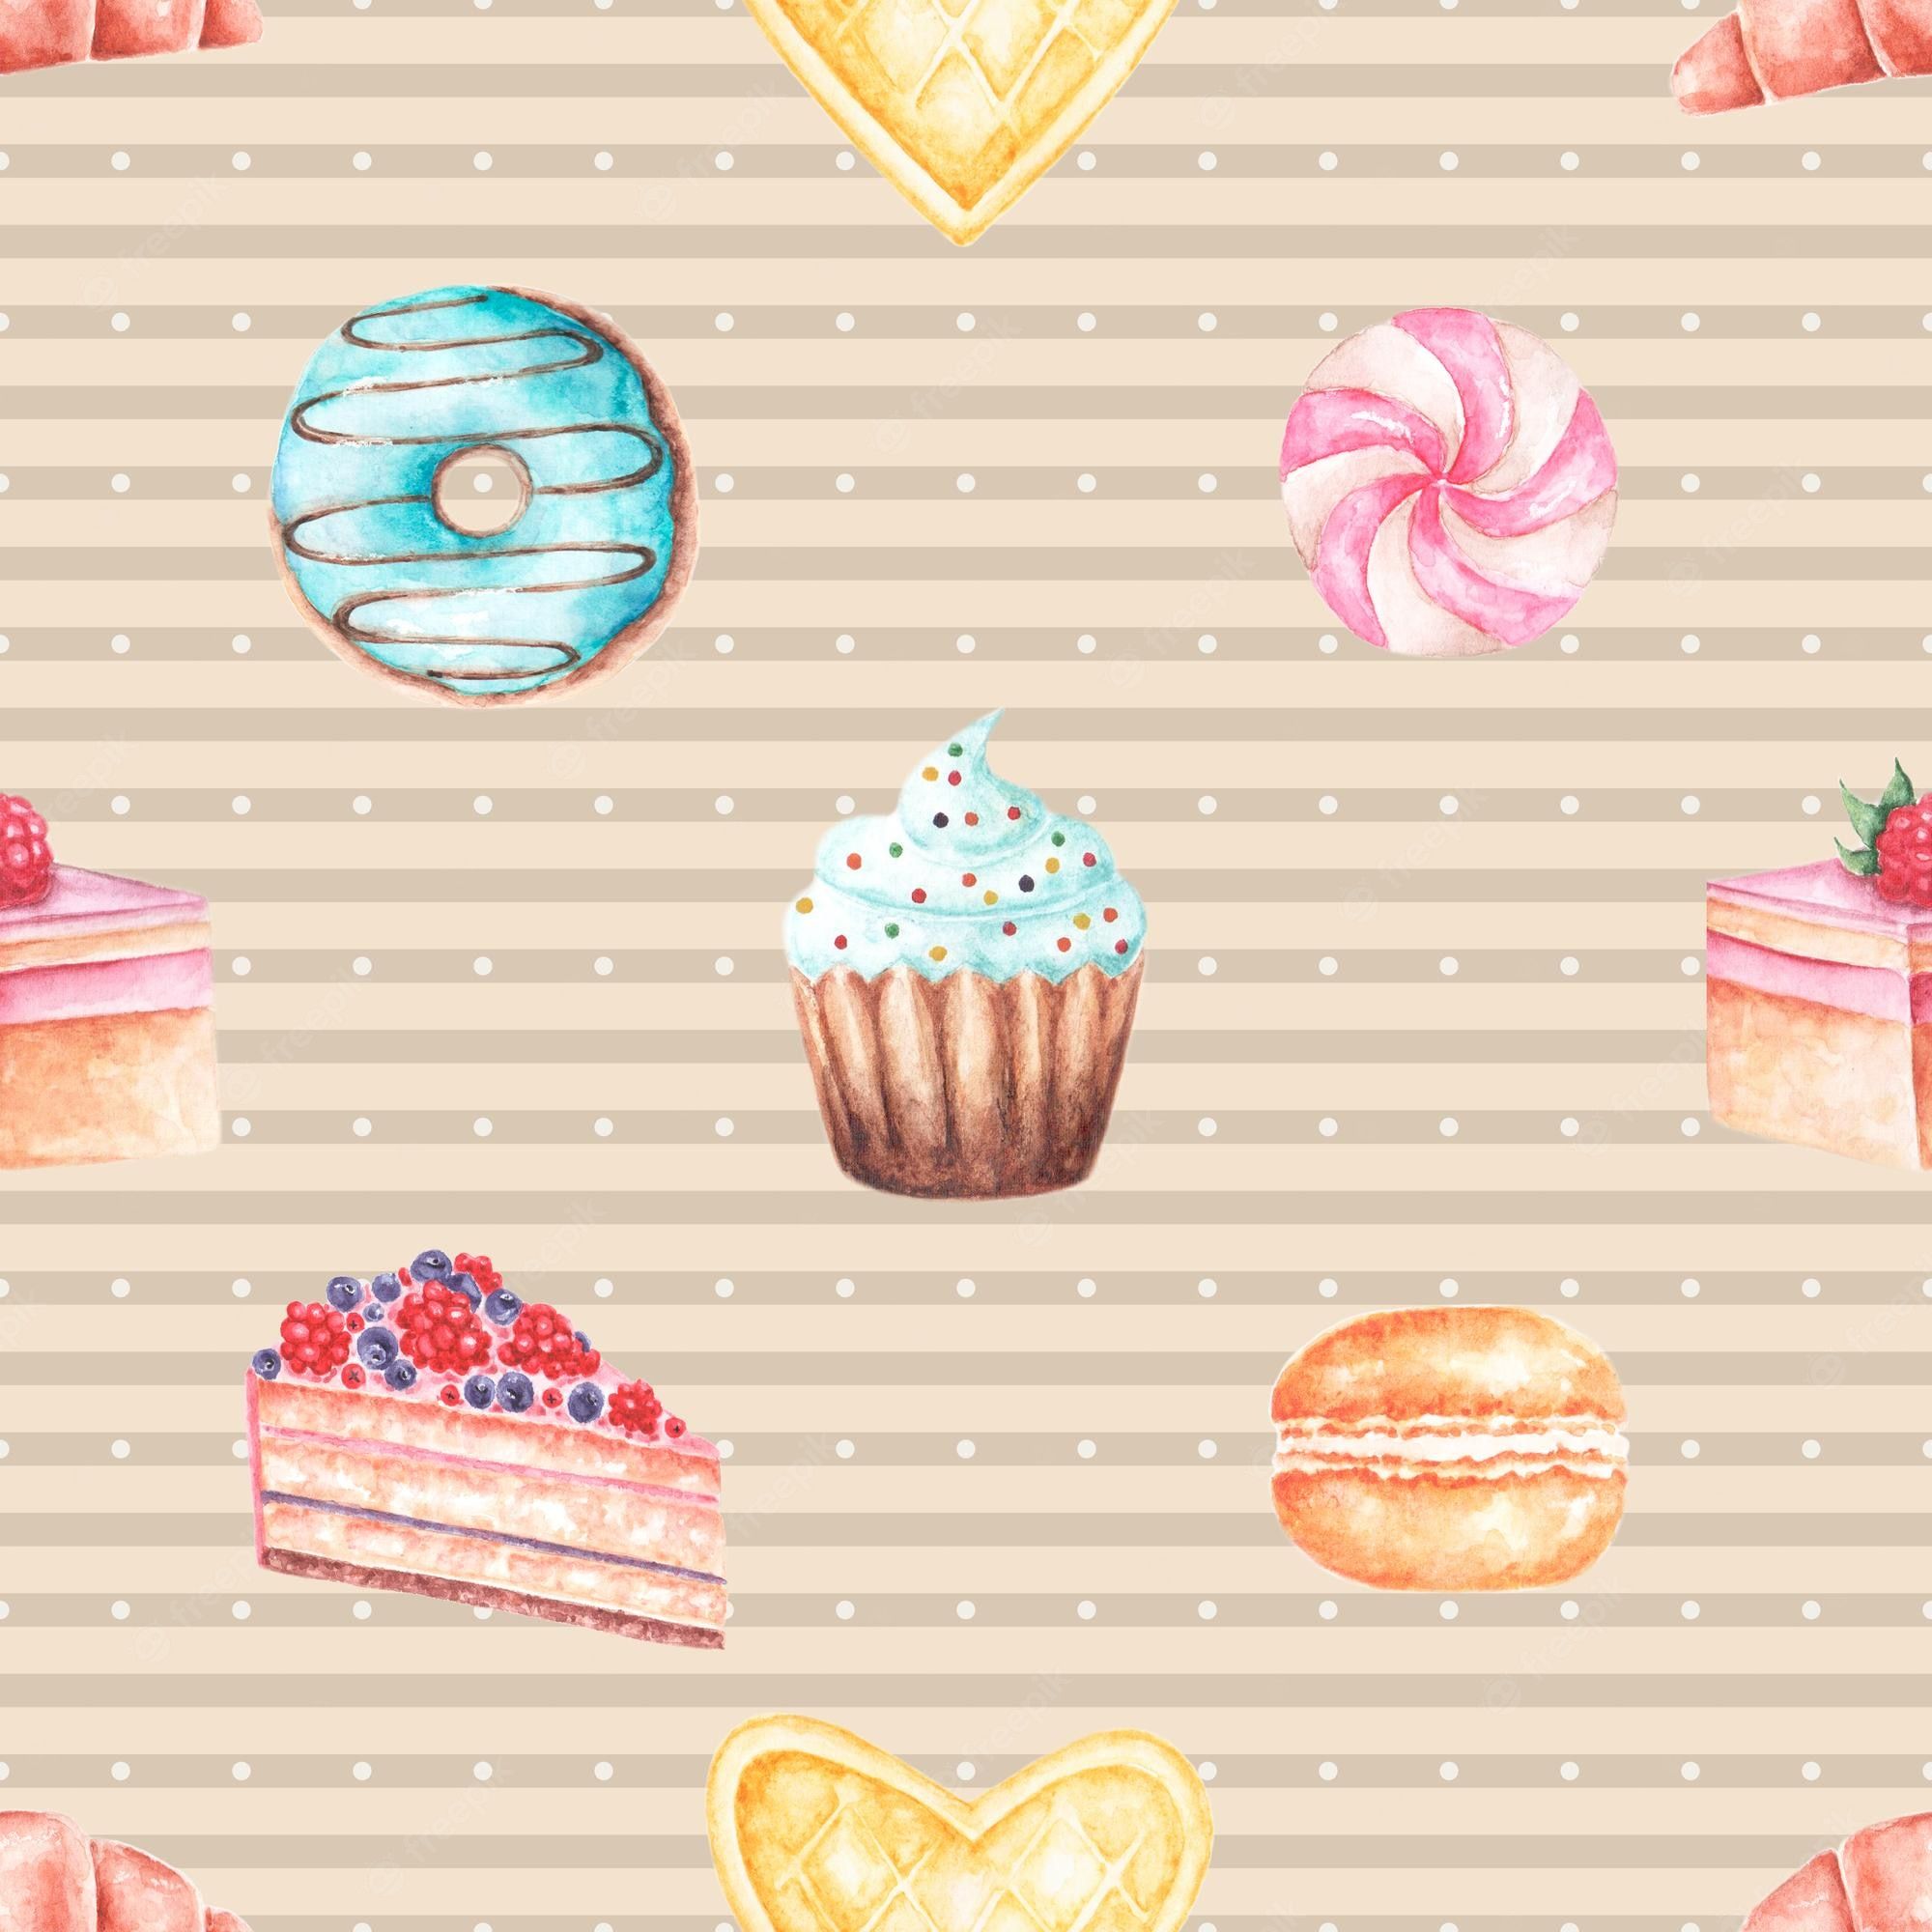 Cake Wallpaper Image